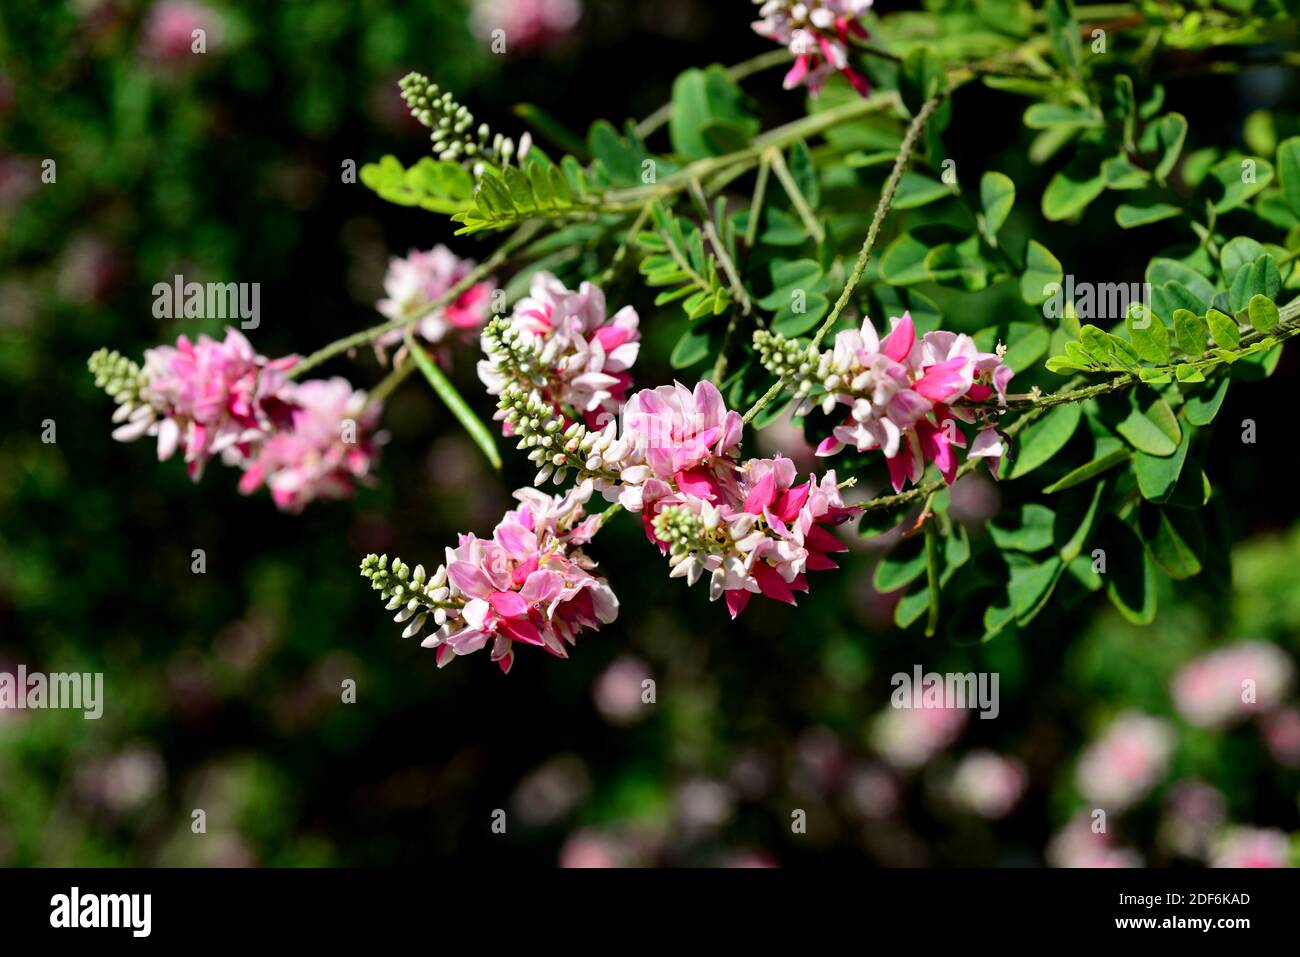 El río indigo (Indigofera jucunda) es un gran arbusto nativo de Sudáfrica. Foto de stock